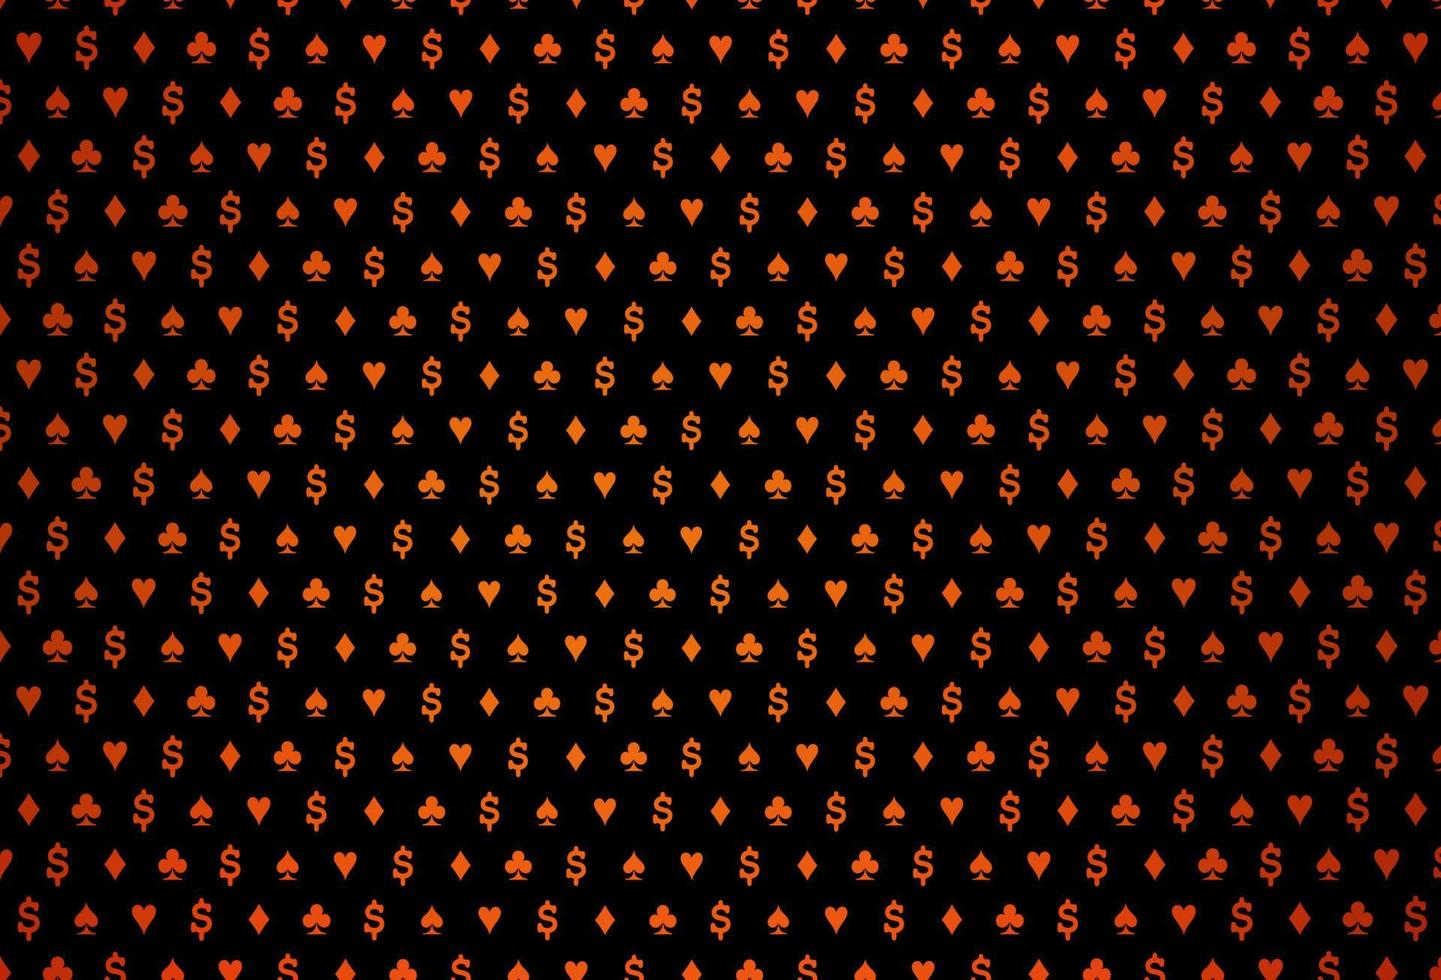 padrão de vetor laranja escuro com símbolo de cartas.